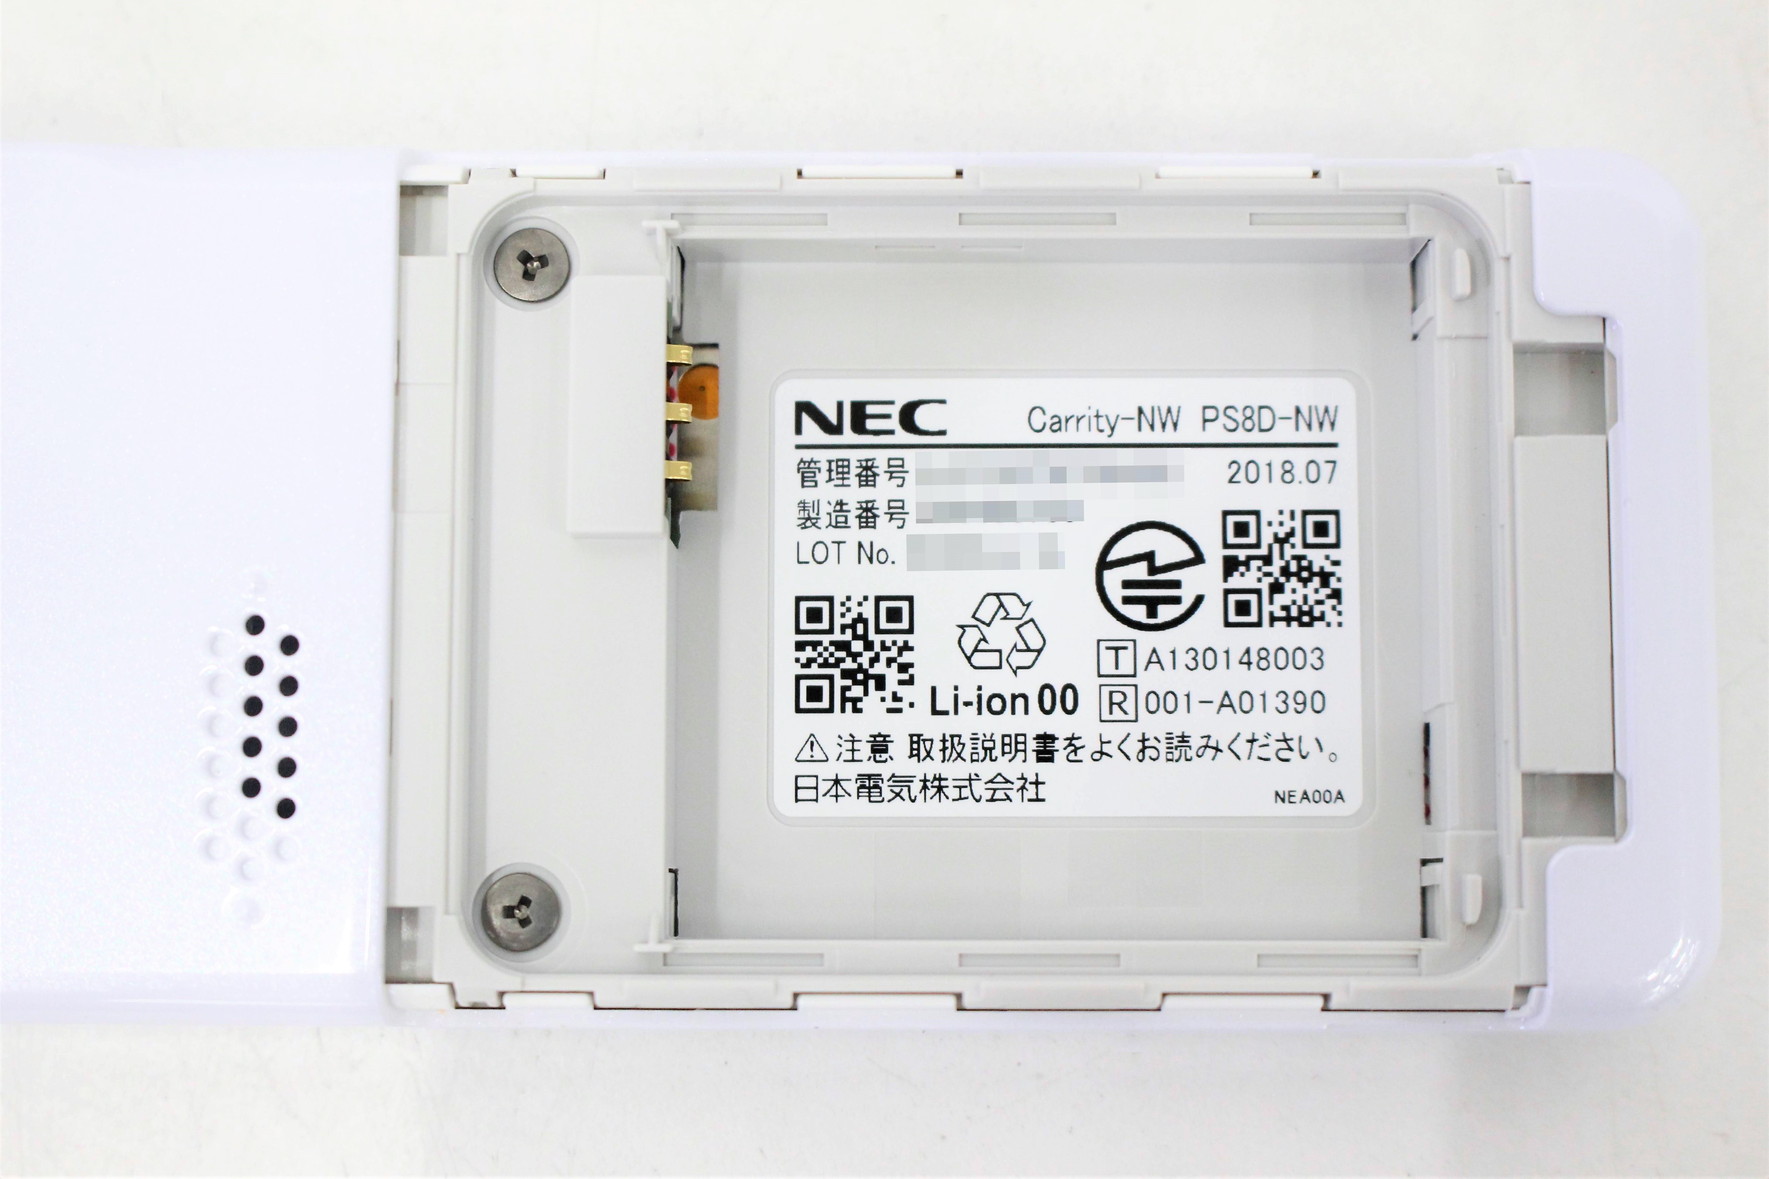 PS8D-NW Carrity-NW NEC製 デジタルコードレス電話機-ビジフォン舗